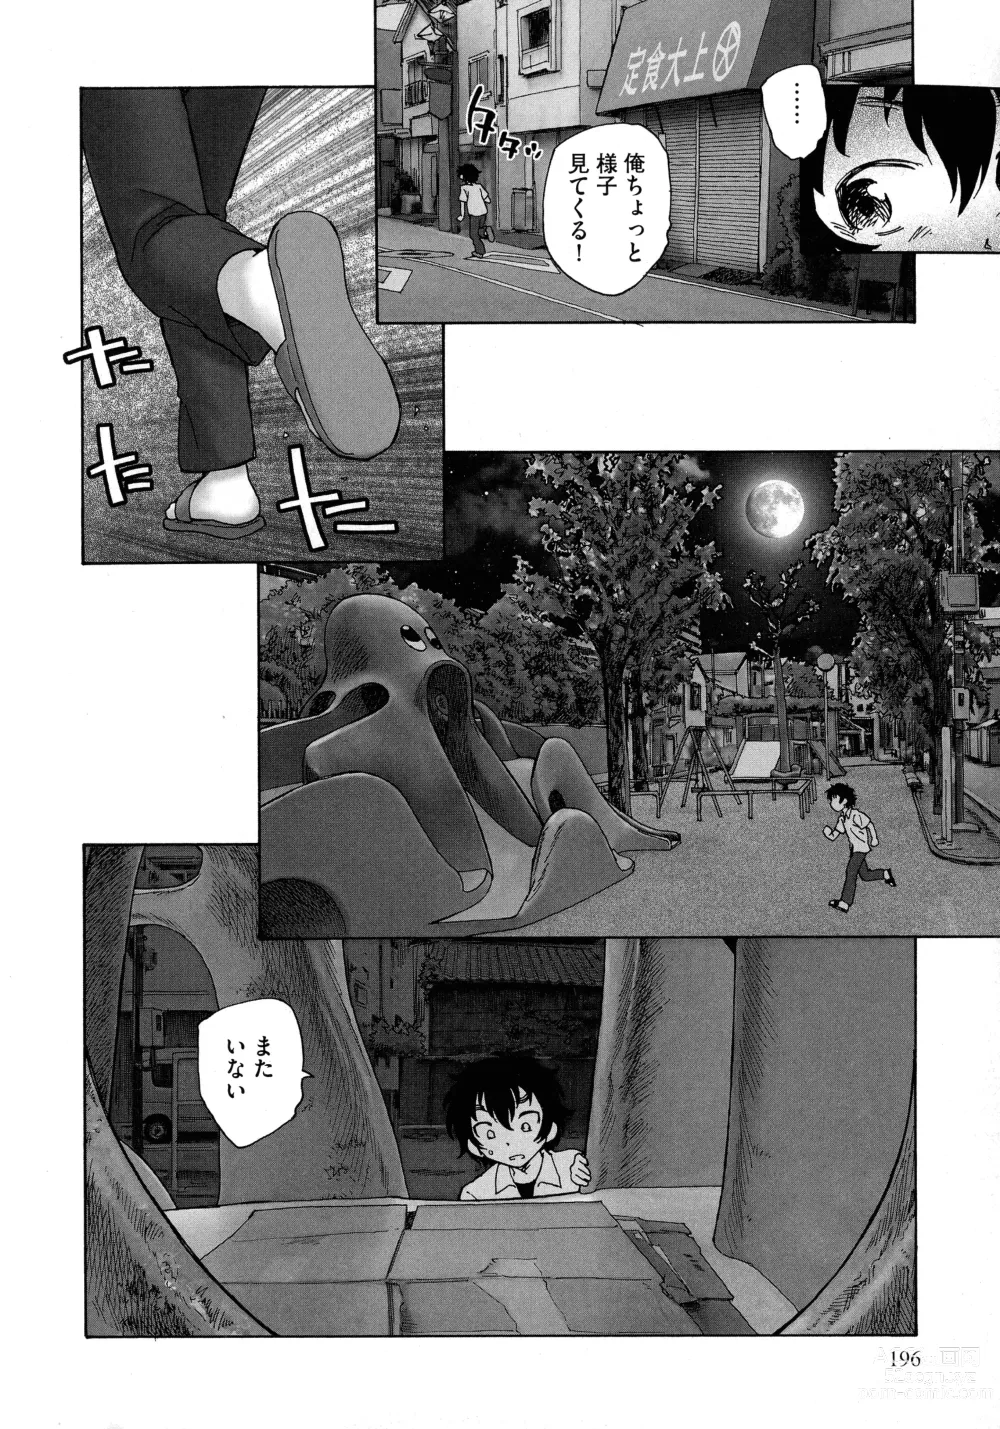 Page 194 of manga Mayoi no Machi no Akazukin Jo